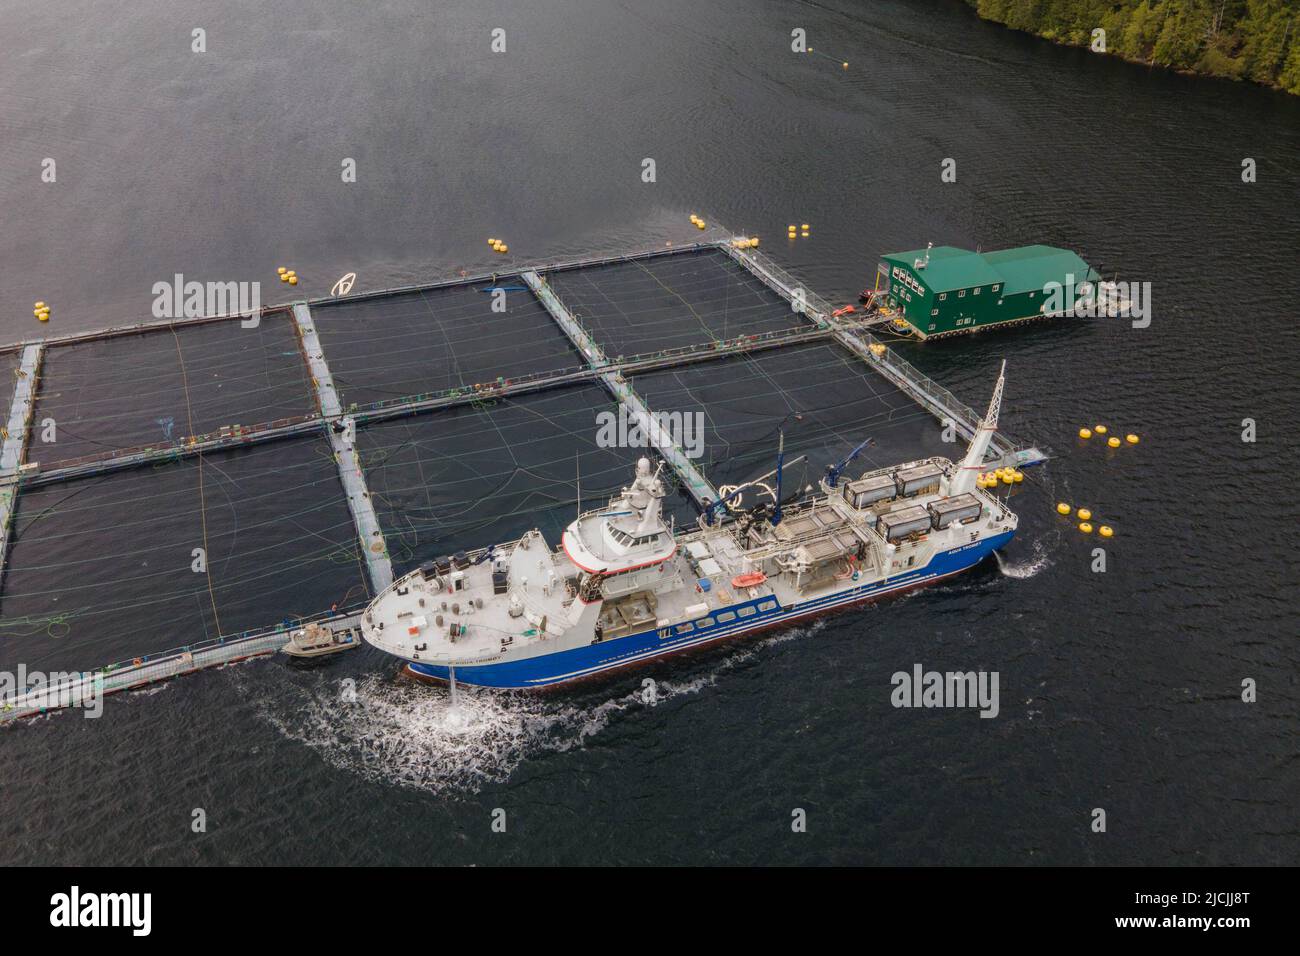 Delice-Schiff, das in einer Lachsfarm in der Nähe der Stadt Tofino auf Vancouver Island, British Columbia, Kanada, Laus-Behandlungen macht. Stockfoto